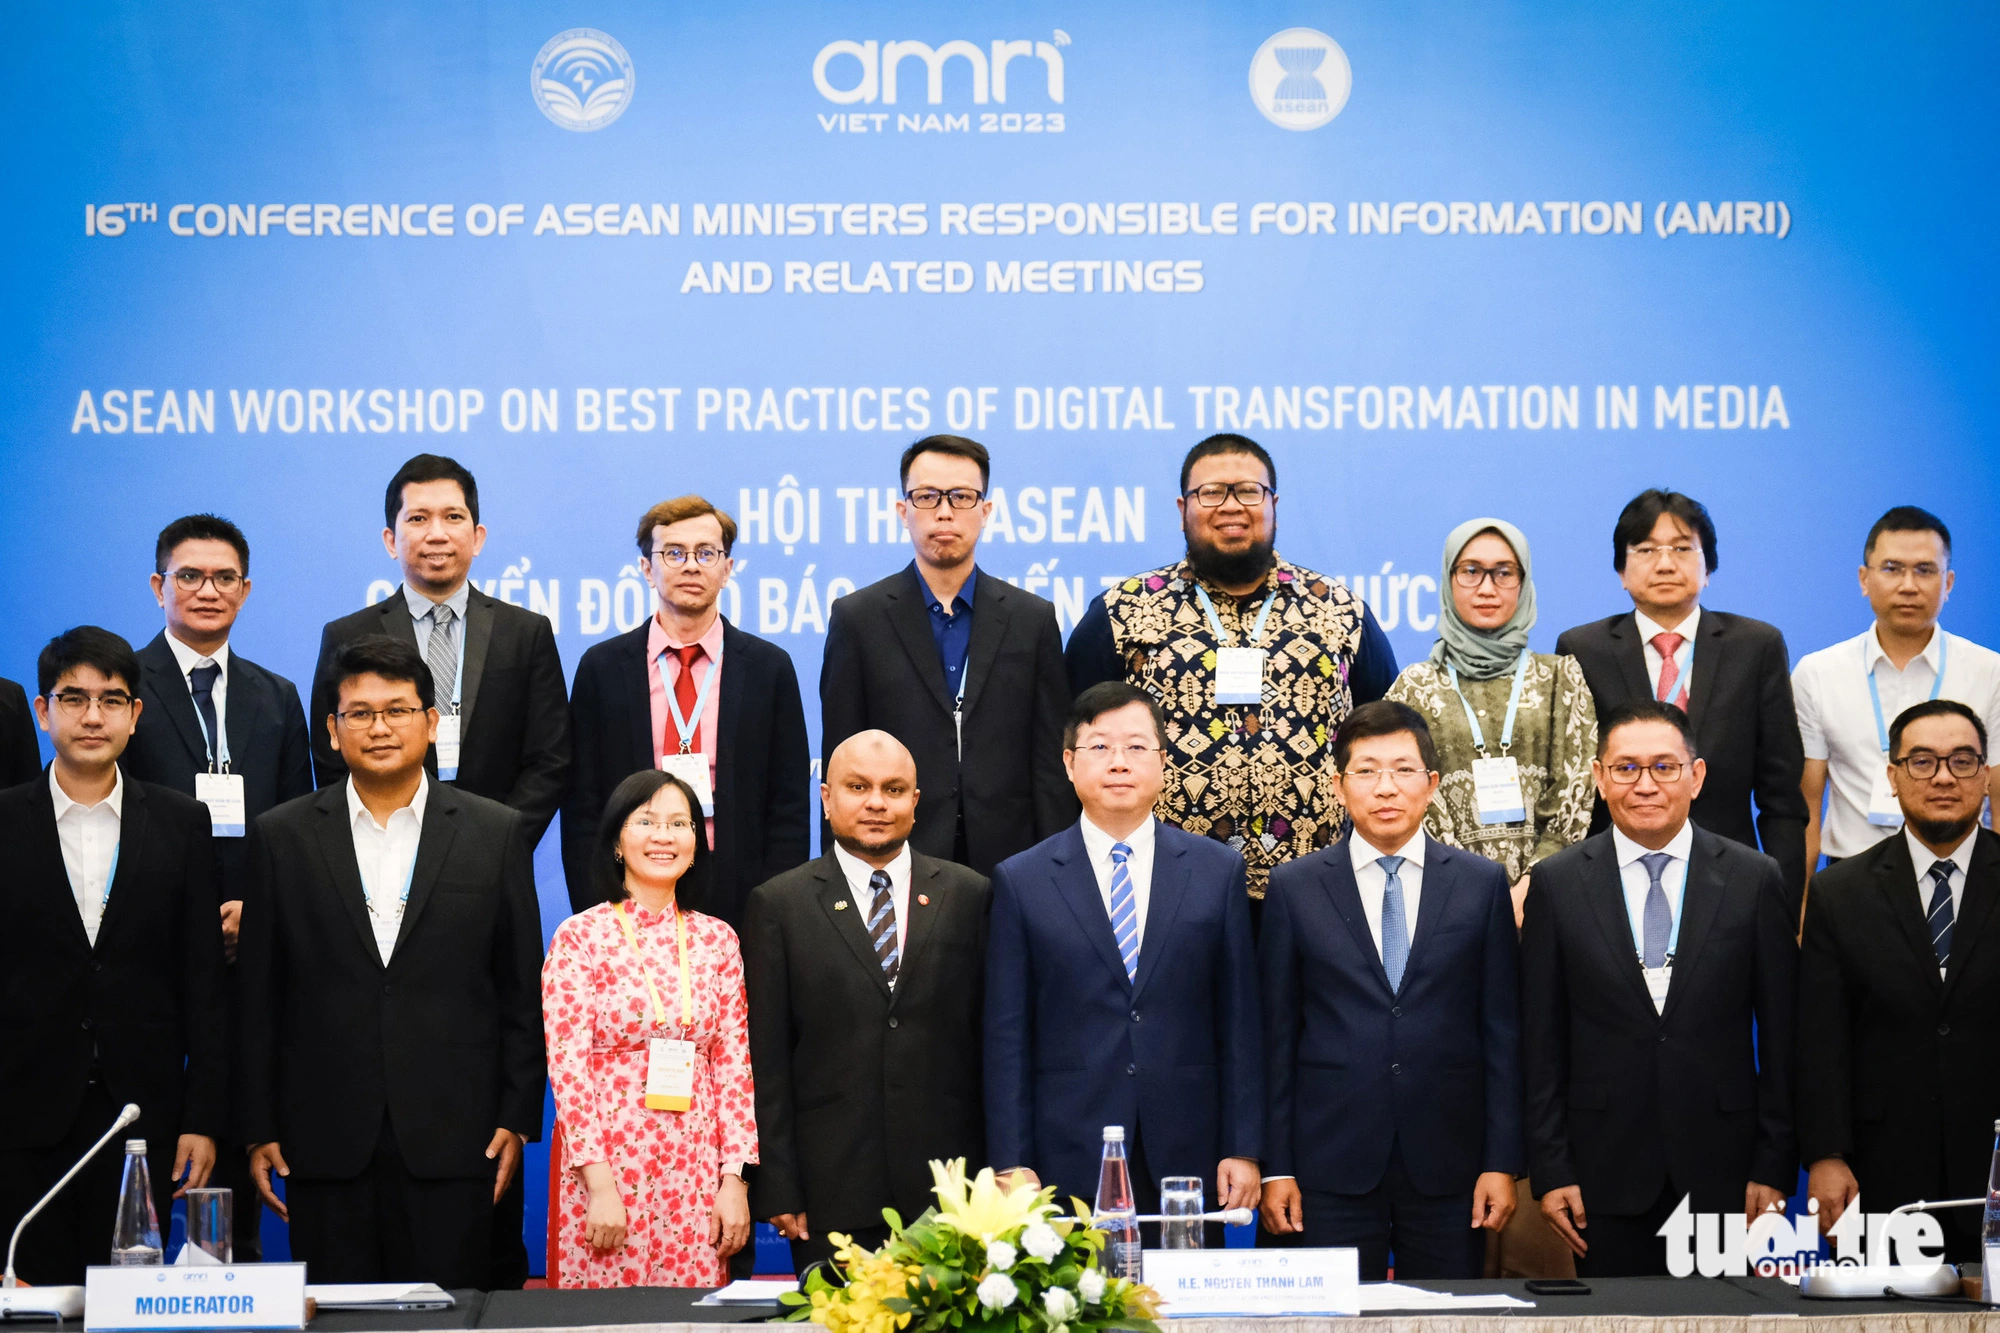 Đại biểu các nước ASEAN tham gia hội thảo chuyển đổi số báo chí ngày 21-9 - Ảnh: TẤN LỰC